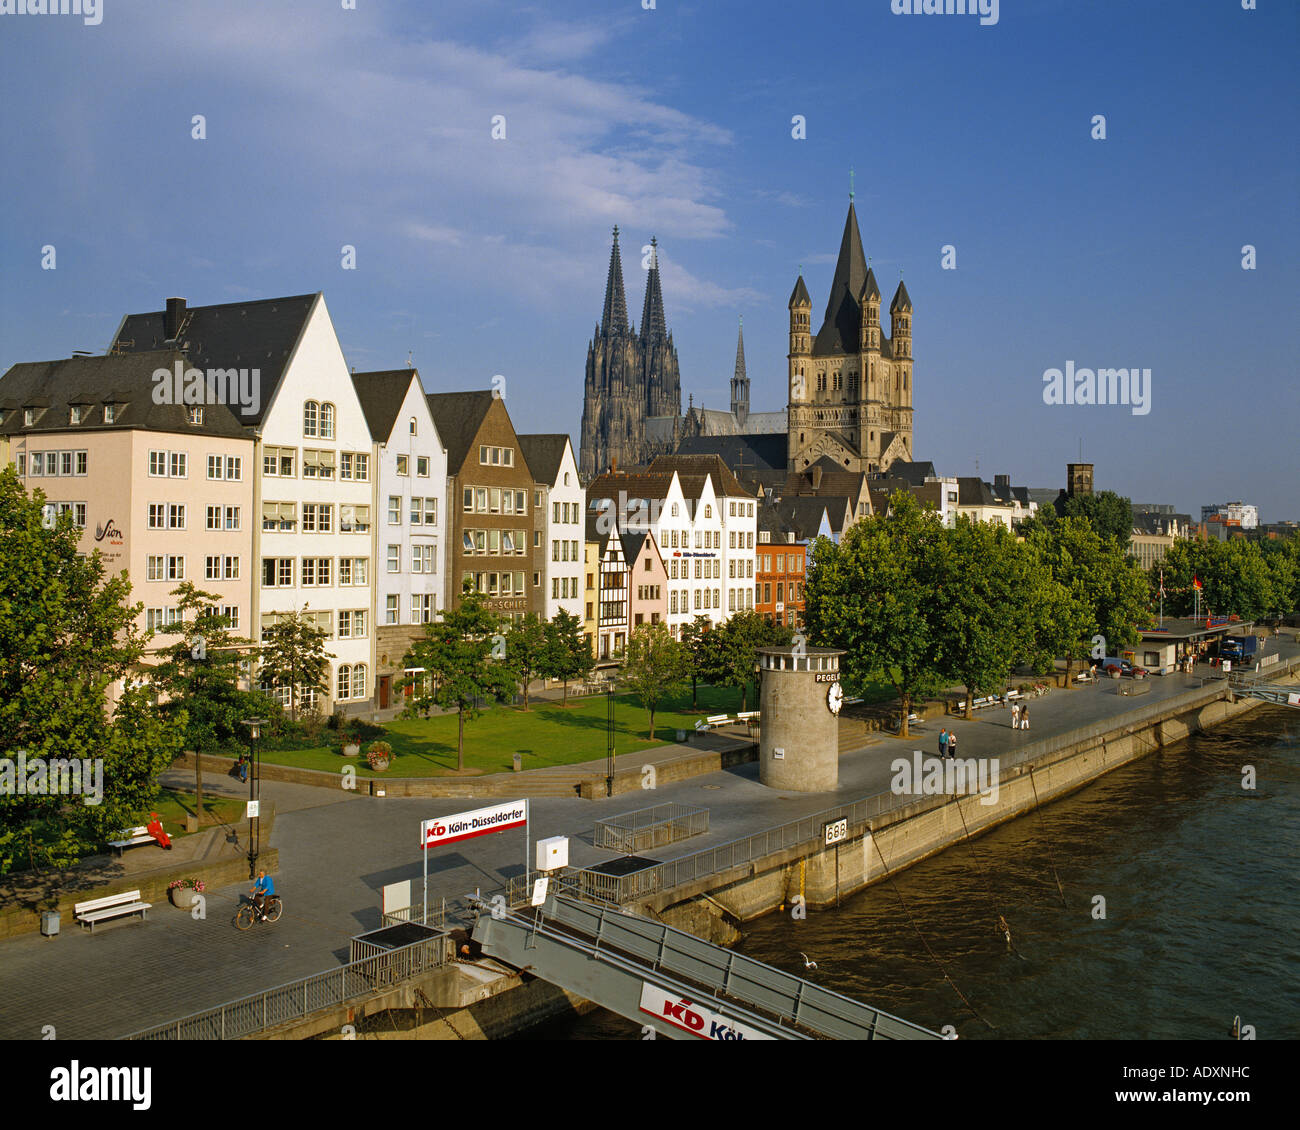 Cologne Altstadt seen from Deutz Bridge, Germany. Stock Photo